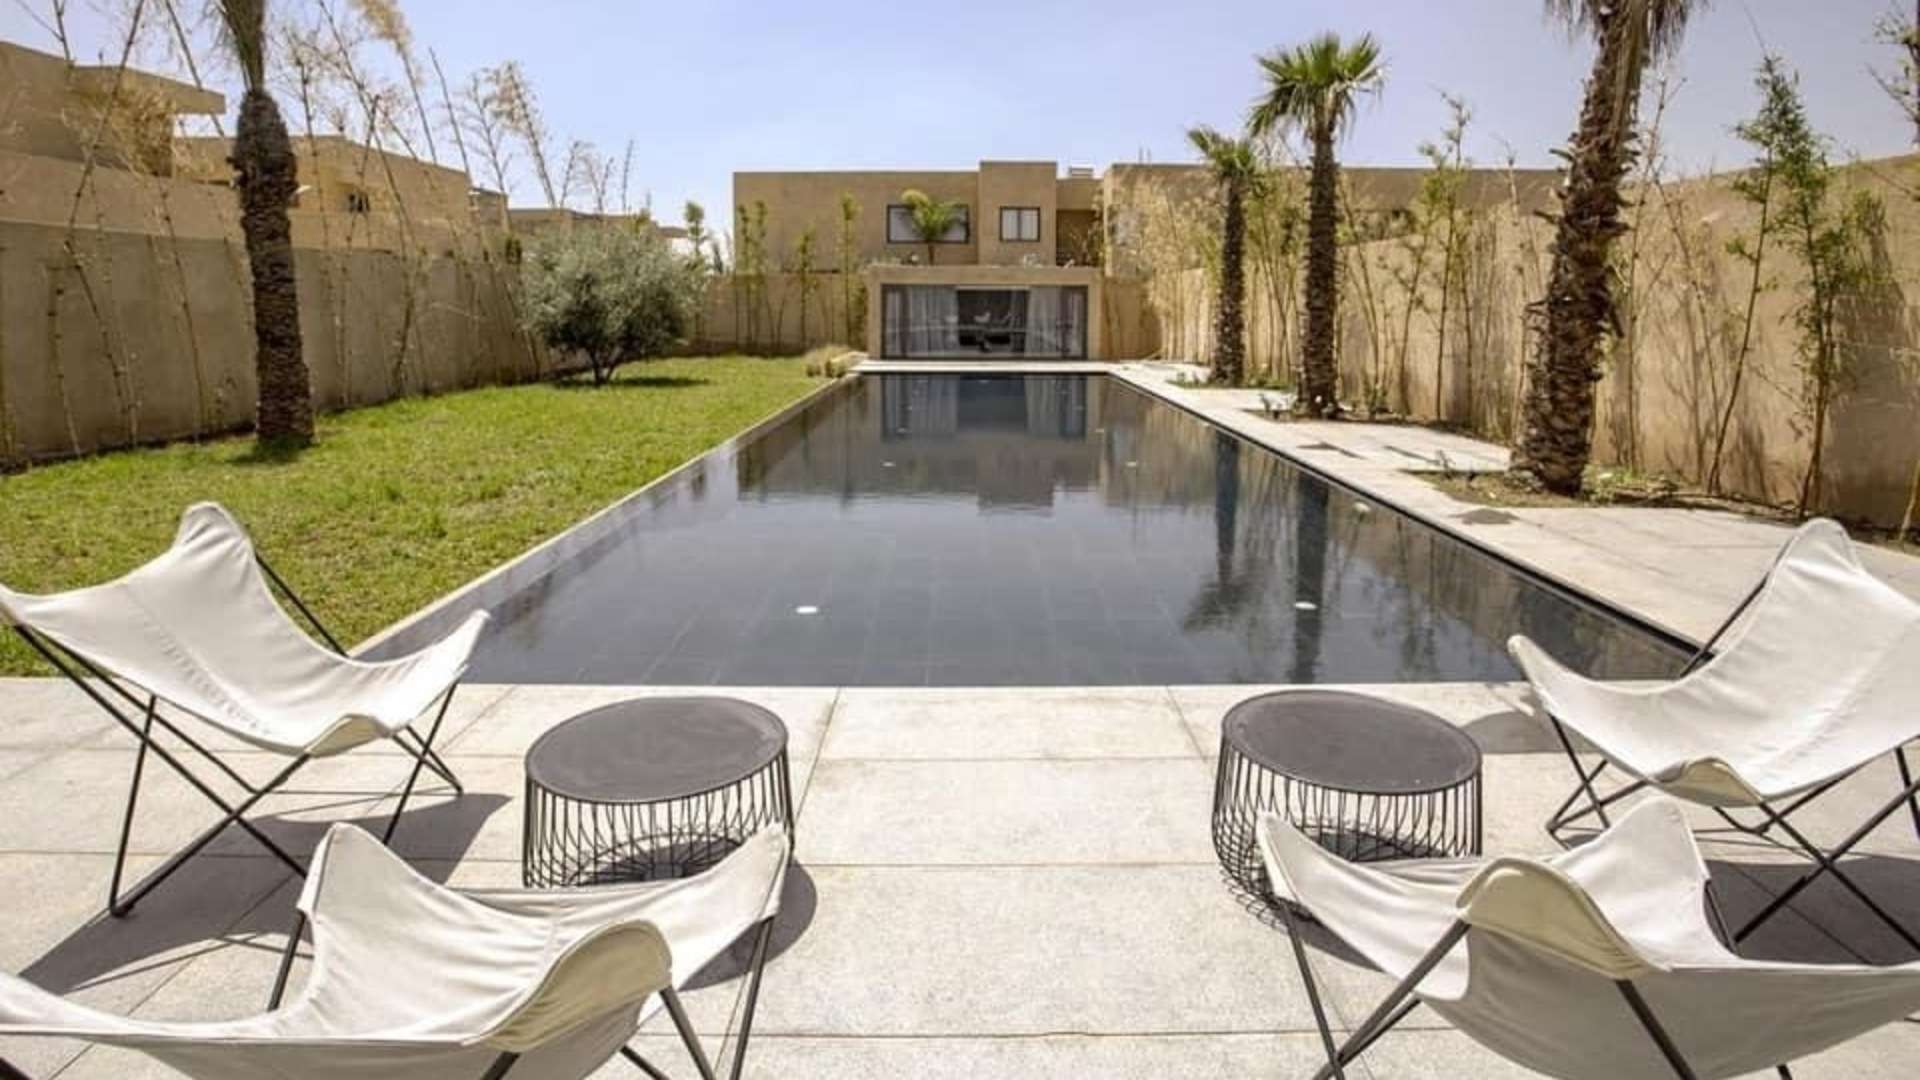 Location de vacances,Villa,Villa moderne de 6 chambres avec piscine privée à 15 min du centre de Marrakech ,Marrakech,Route de Fès